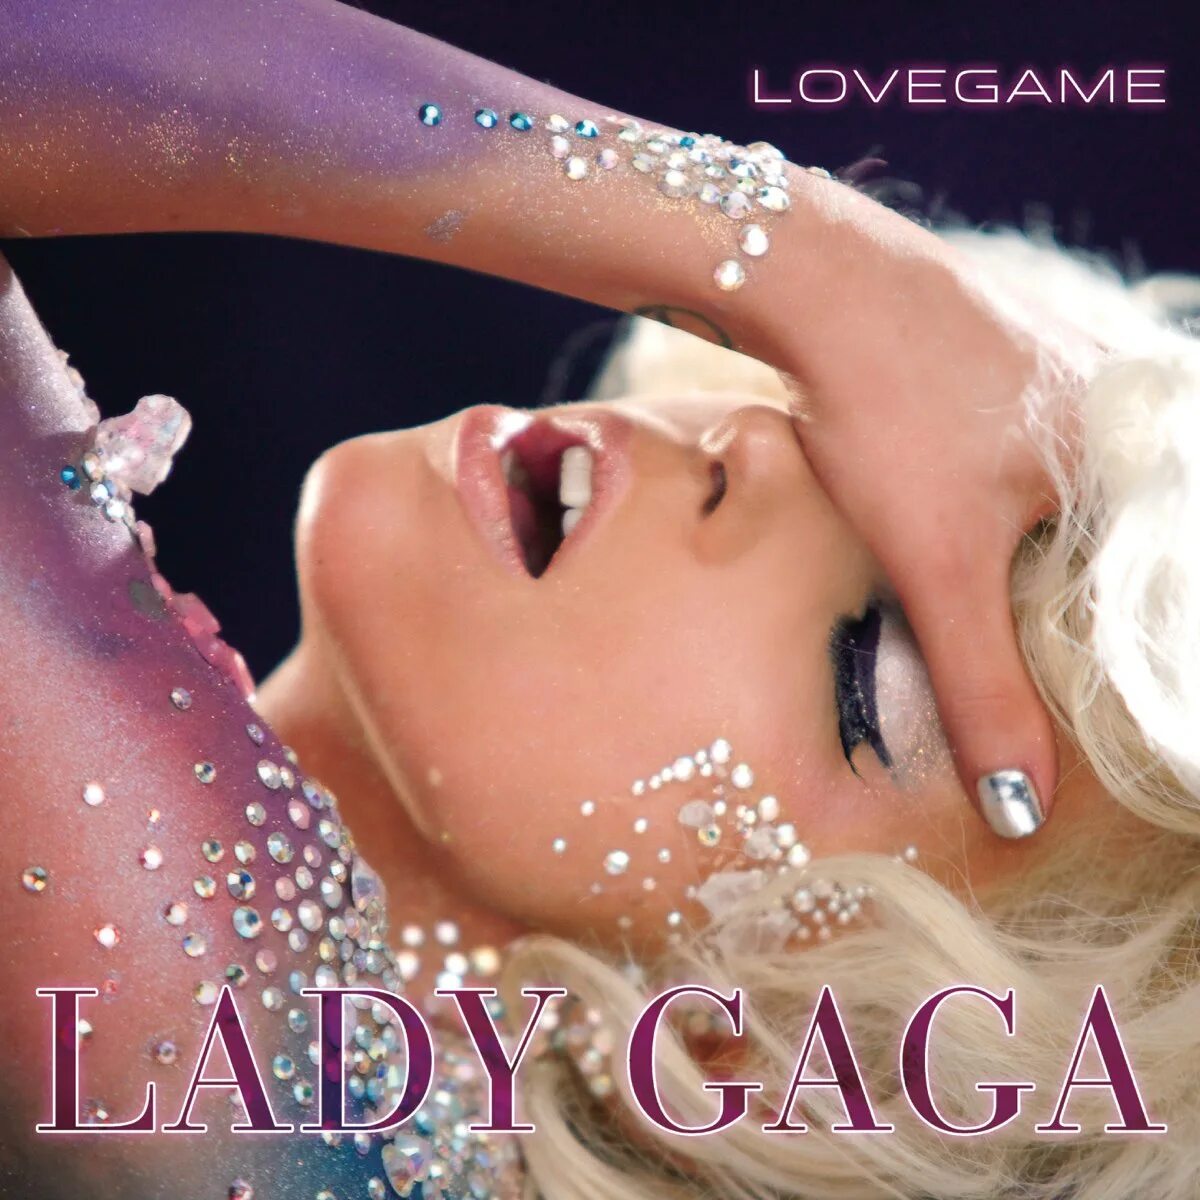 Лов гейм гага. Lady Gaga LOVEGAME обложка. LOVEGAME леди Гага. Lady Gaga Love game. LOVEGAME Lady Gaga альбом.